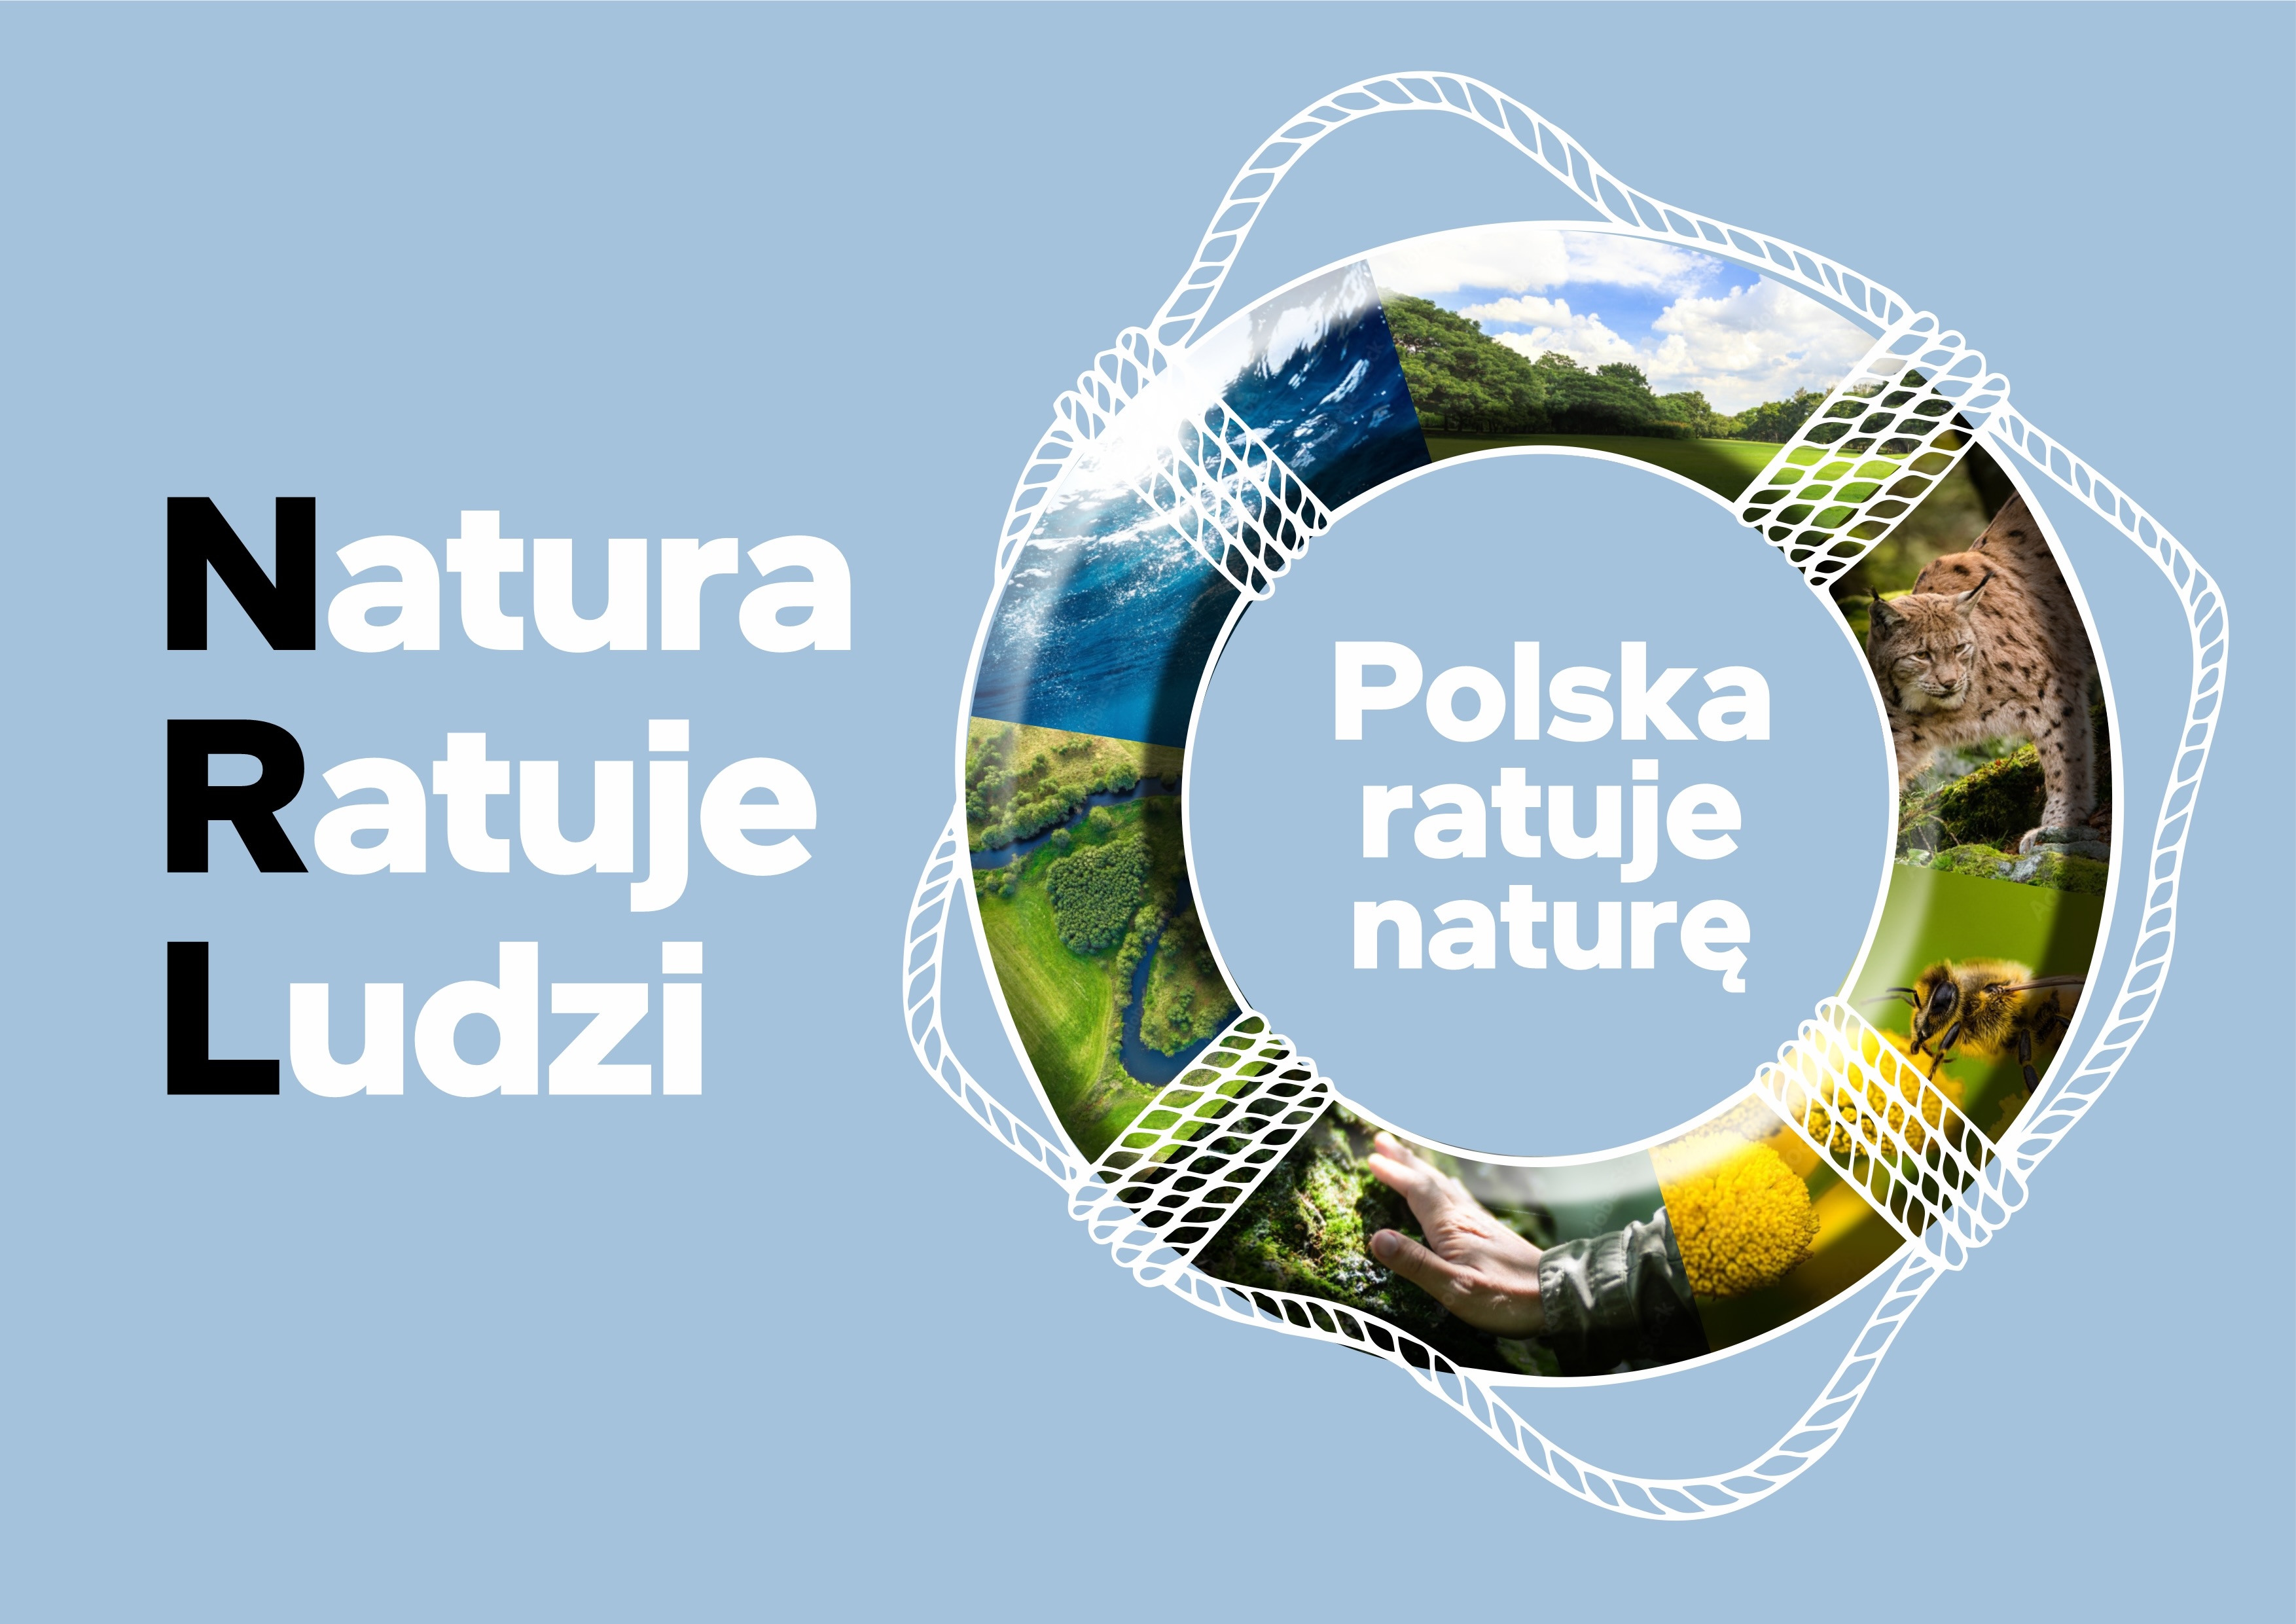 POLSKA ratuje nature grafika